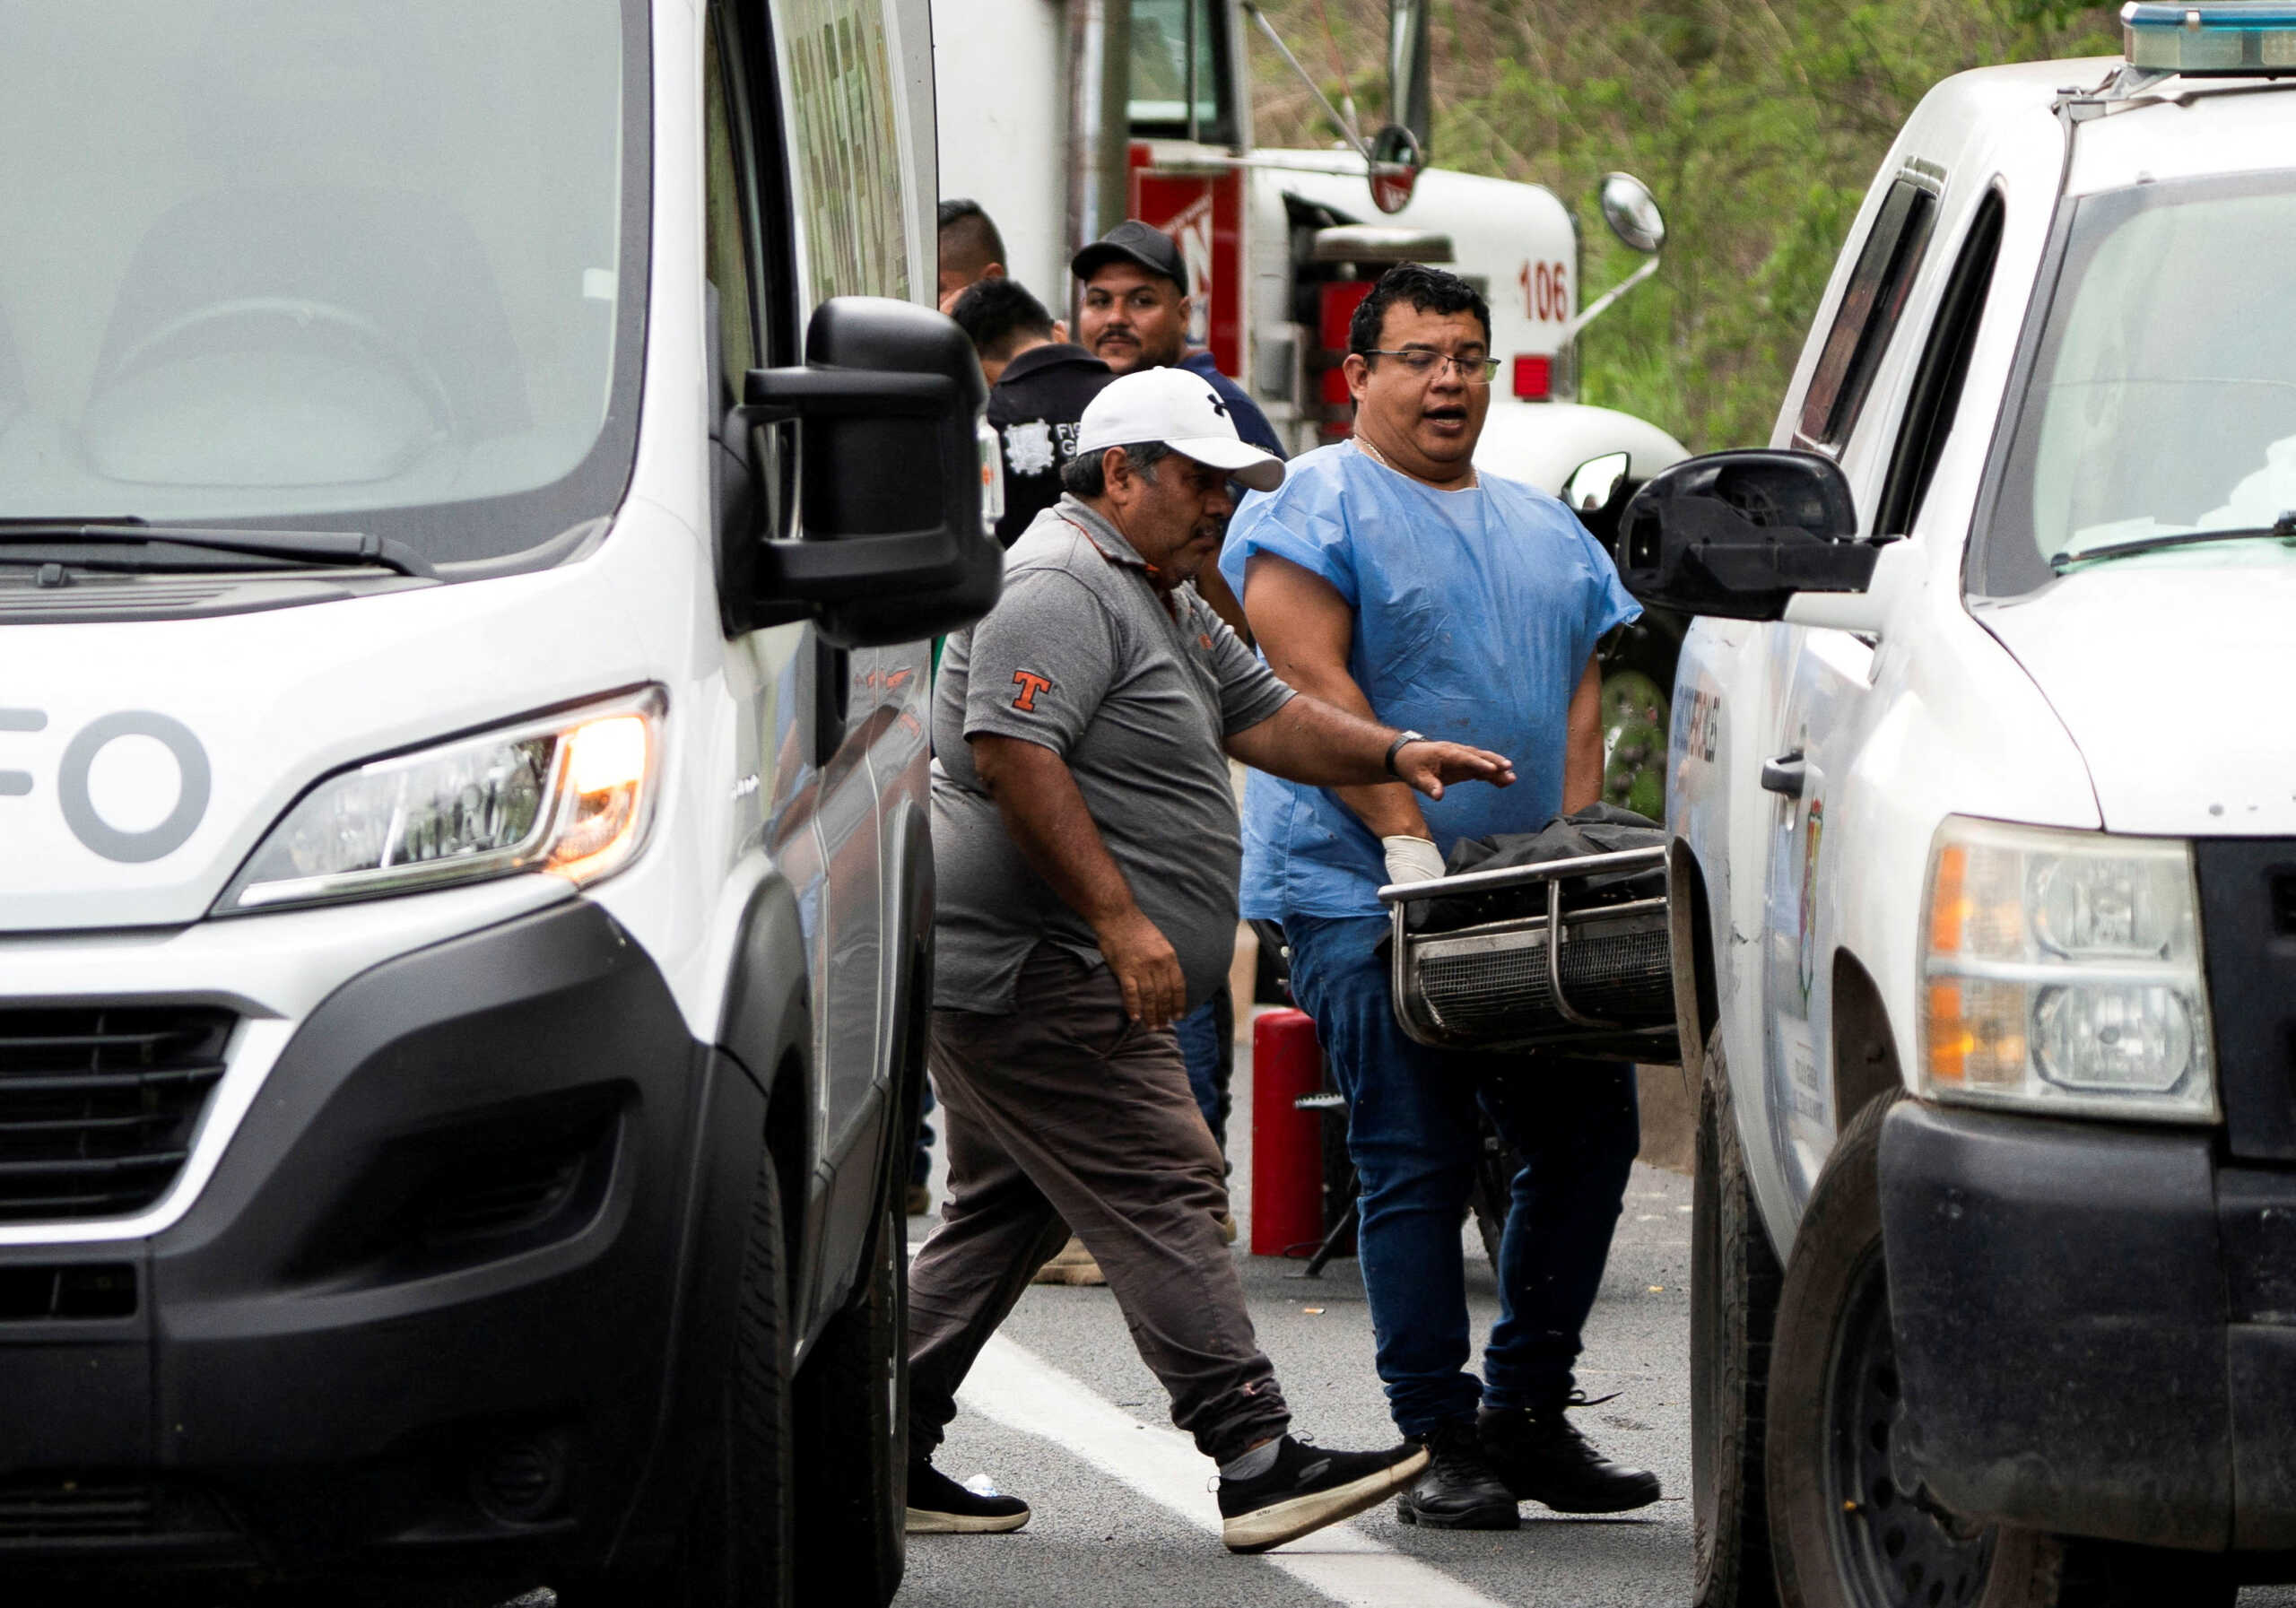 Μεξικό: Βρέθηκαν πέντε πτώματα γυμνά και χτυπημένα σε εγκαταλελειμμένο αυτοκίνητο